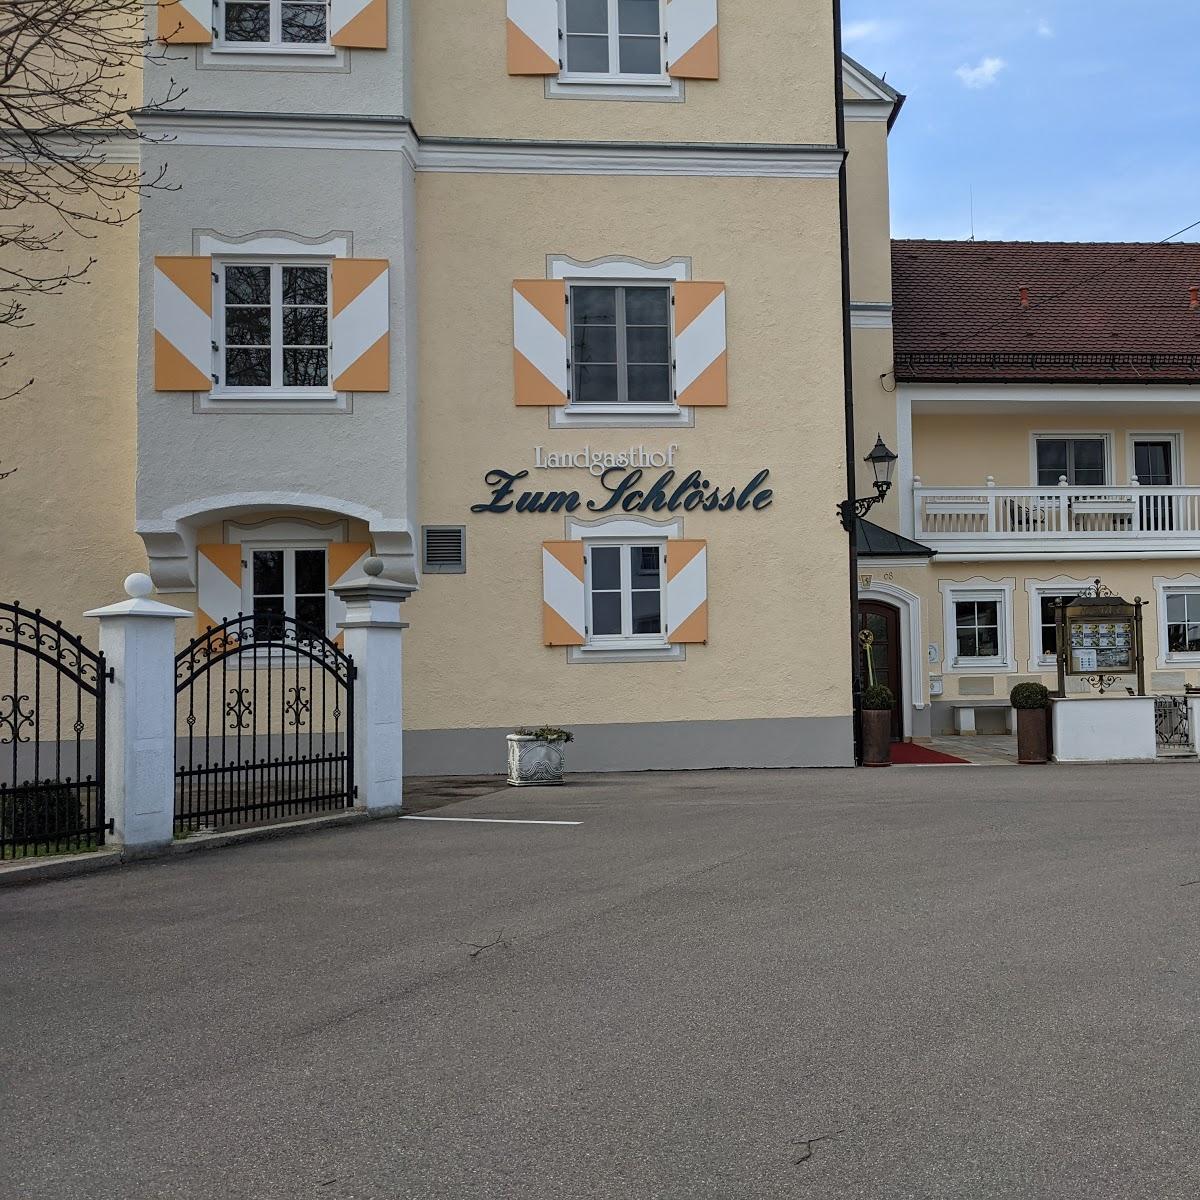 Restaurant "Restaurant-Landgasthof-Hotel  Zum Schlössle " in  Finningen